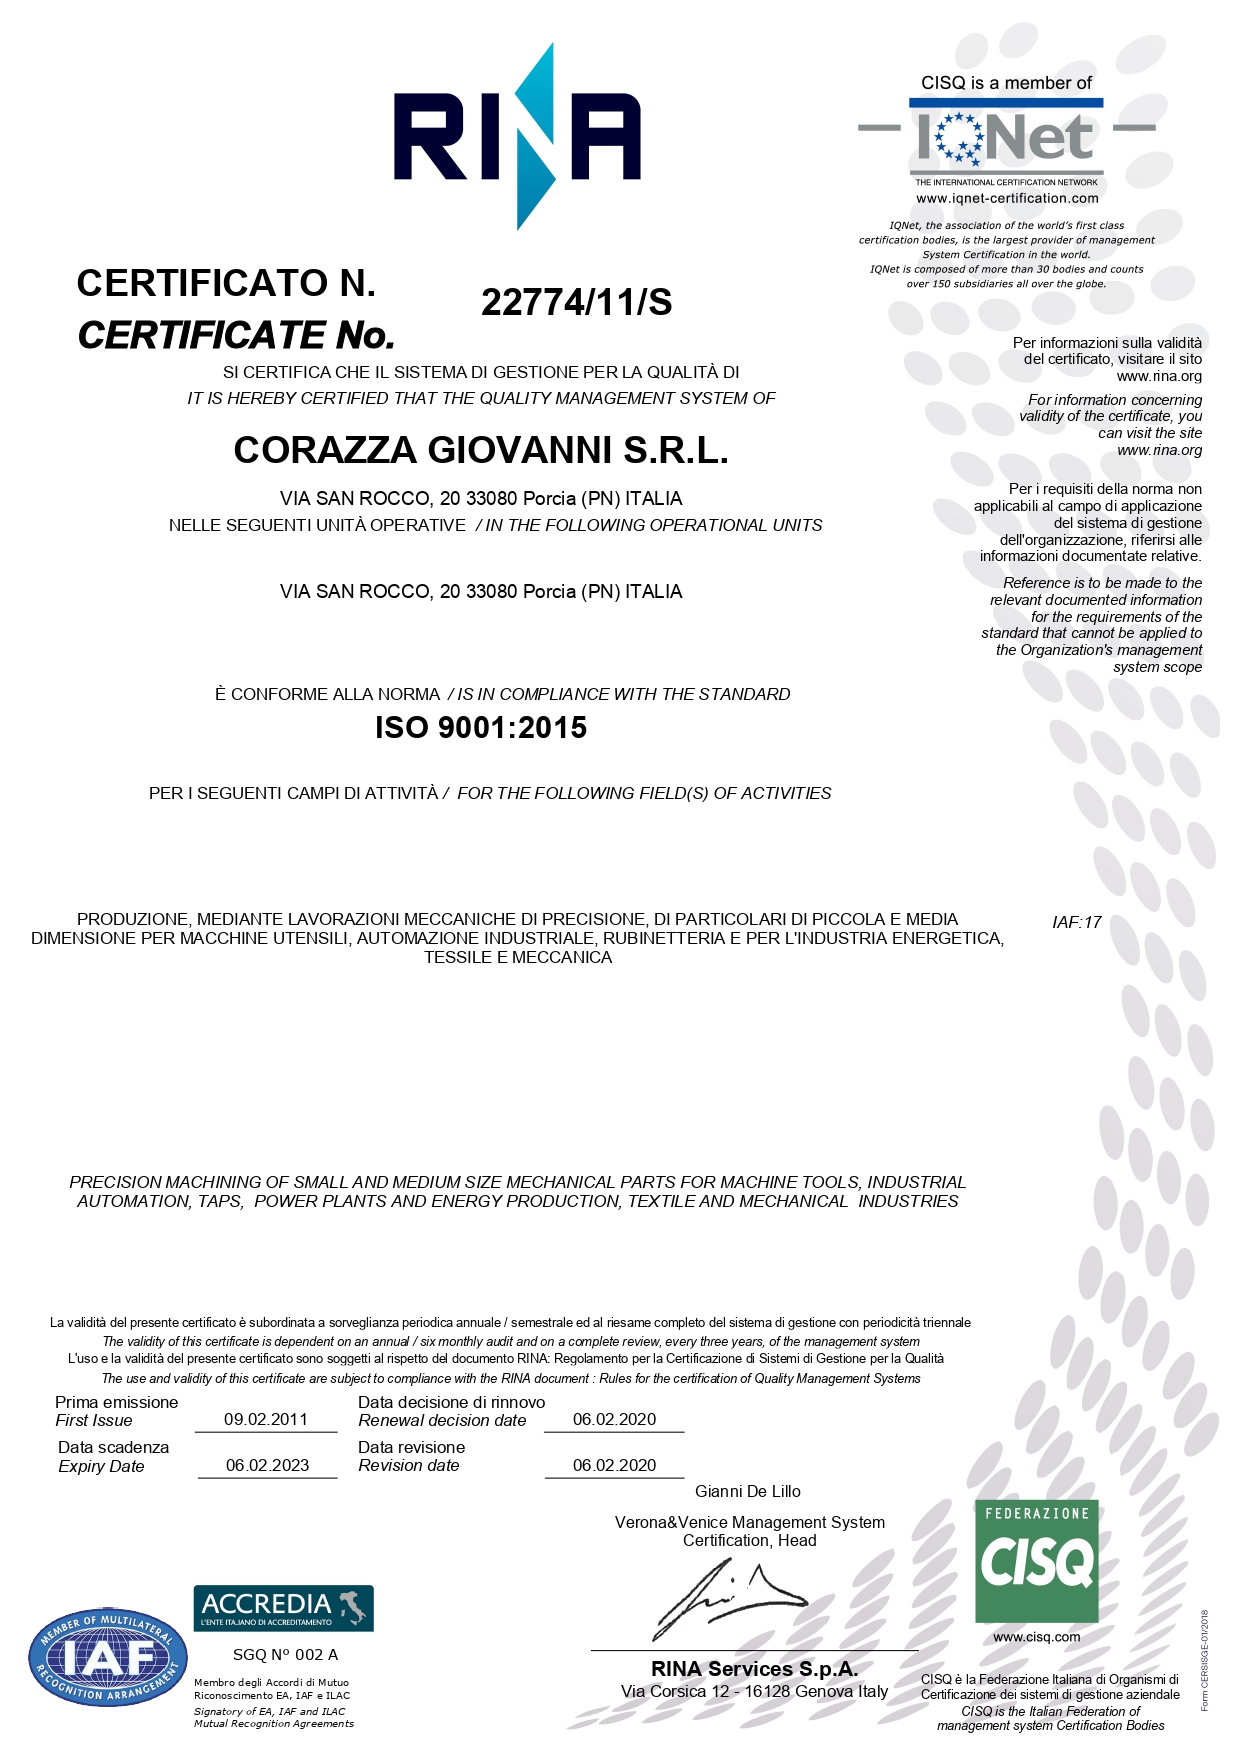 Rina Certificato 2020 Corazza Giovanni srl - Quality Manager System